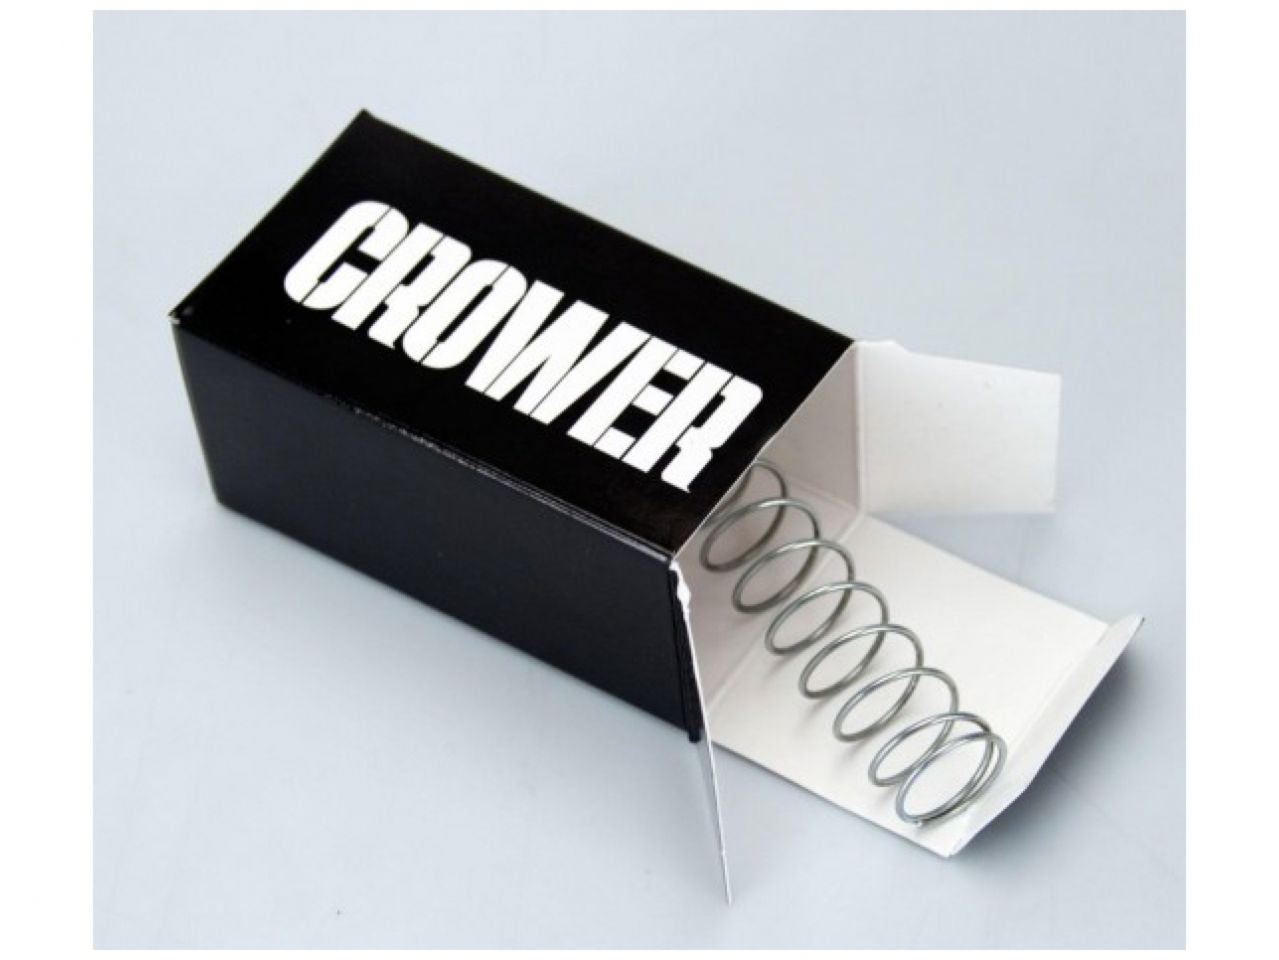 Crower Degreeing & Checking Spring